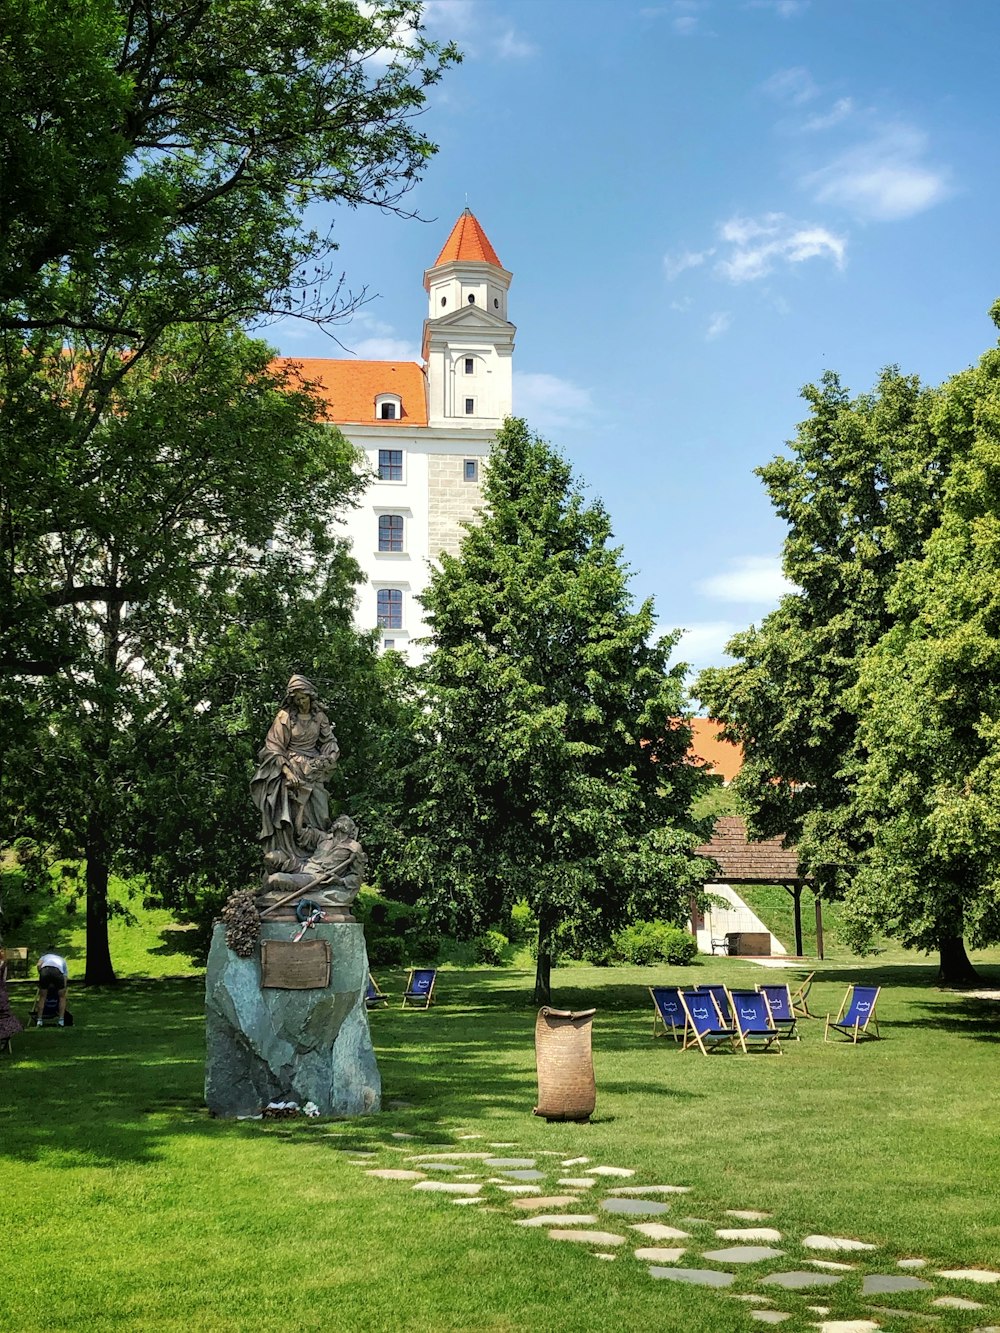 Statue in der Nähe von Bäumen und Gebäuden während des Tages